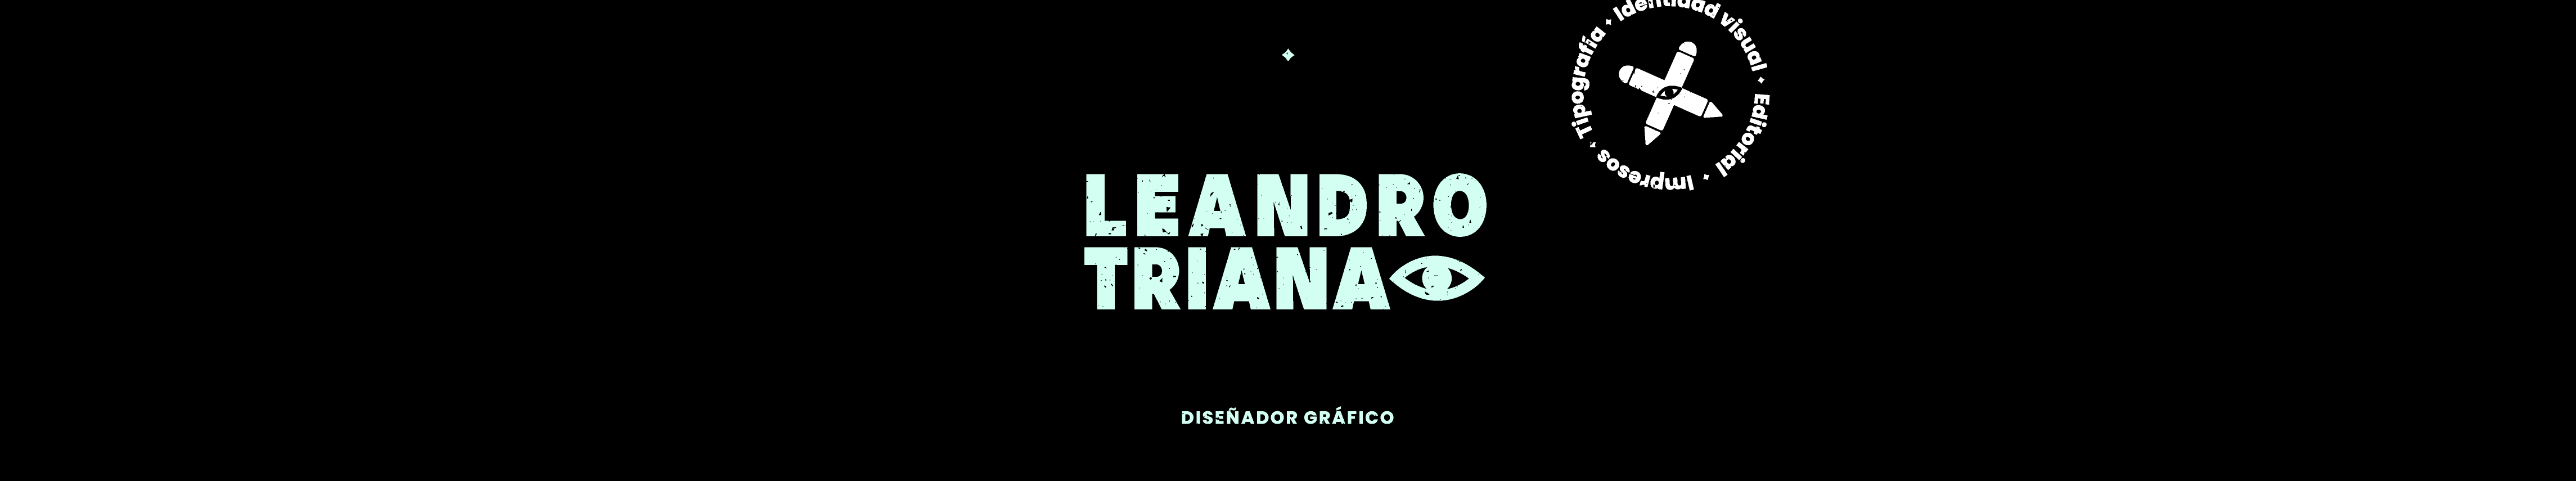 Leandro Triana Trujillo profil başlığı